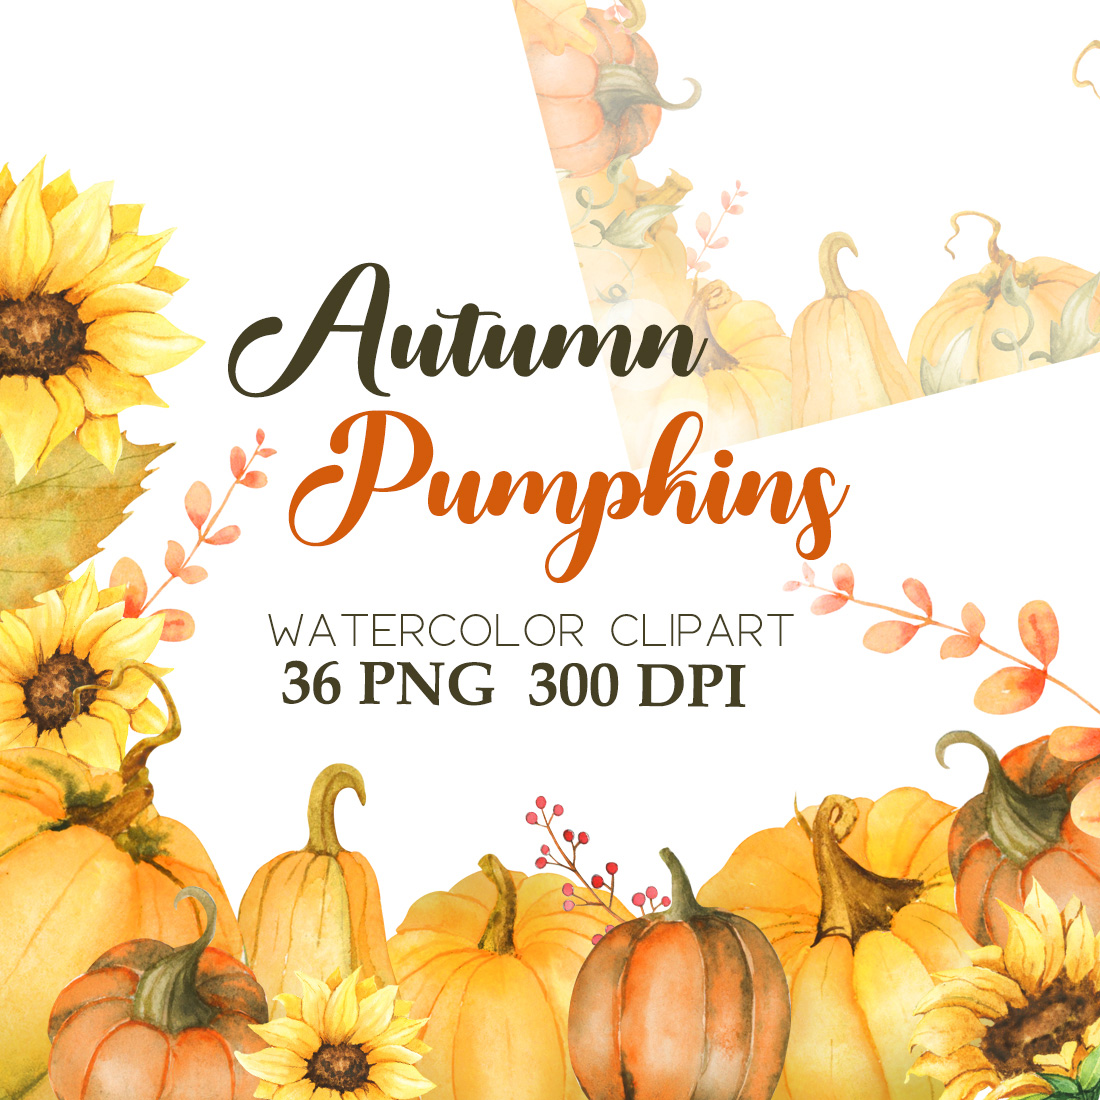 Pumpkins Autumn Watercolor Clipart cover image.